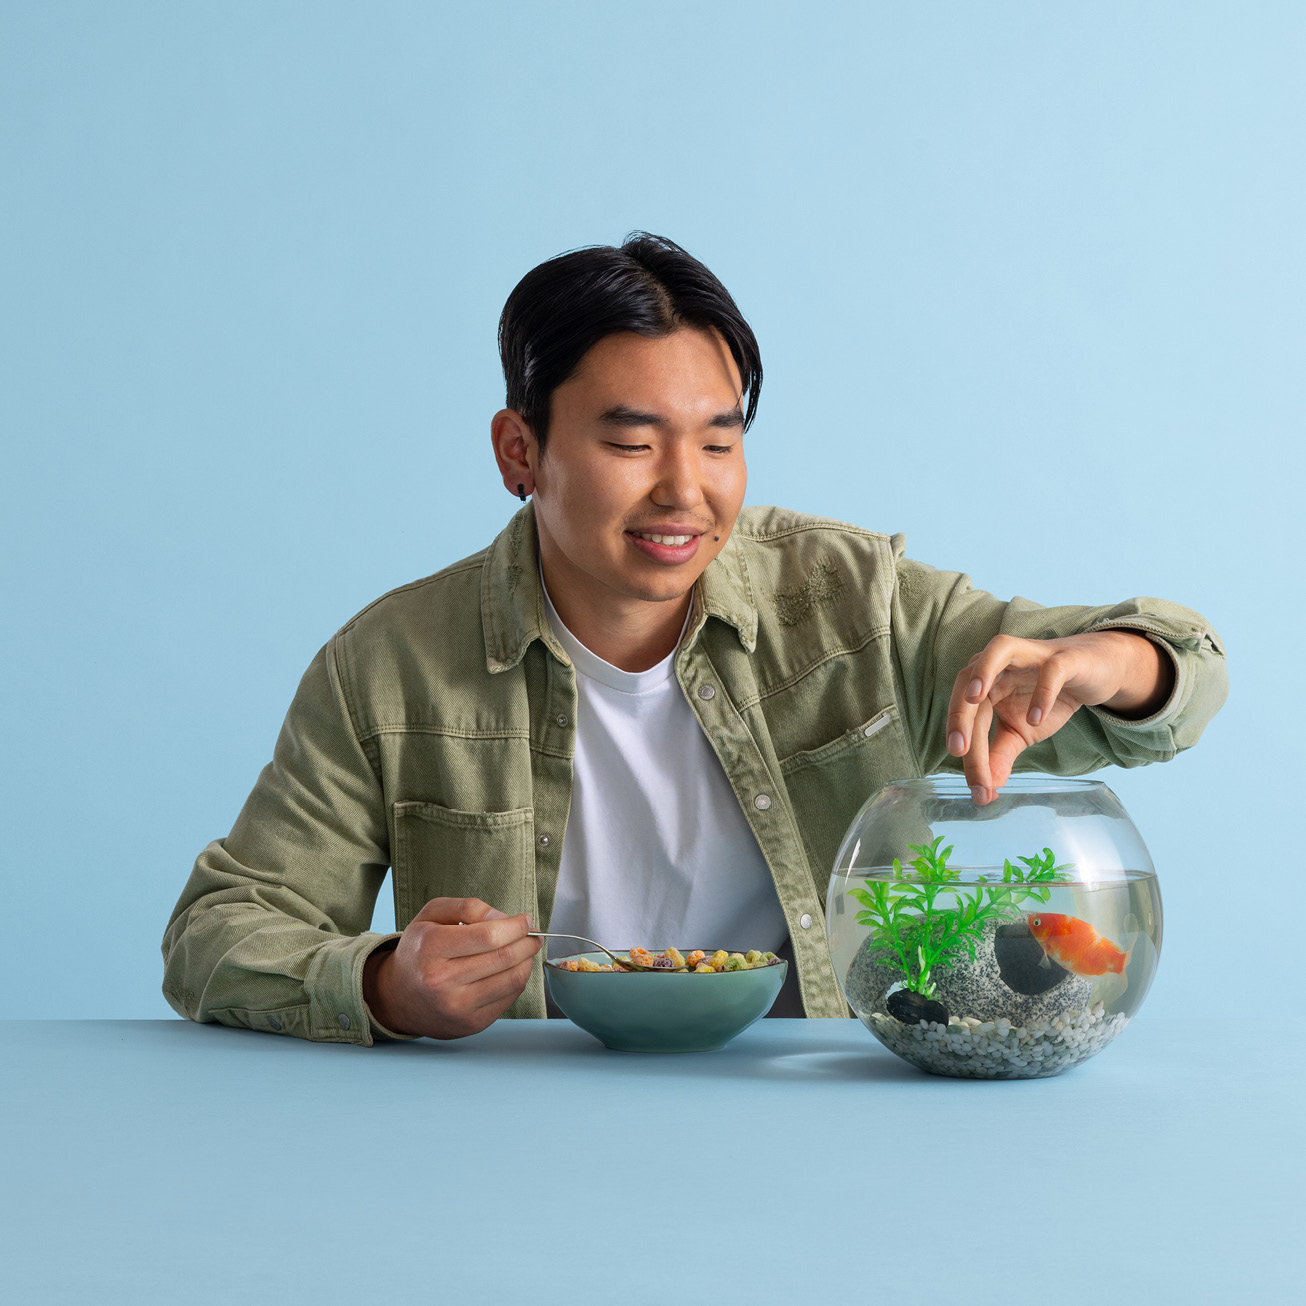 Man feeding a goldfish in a bowl